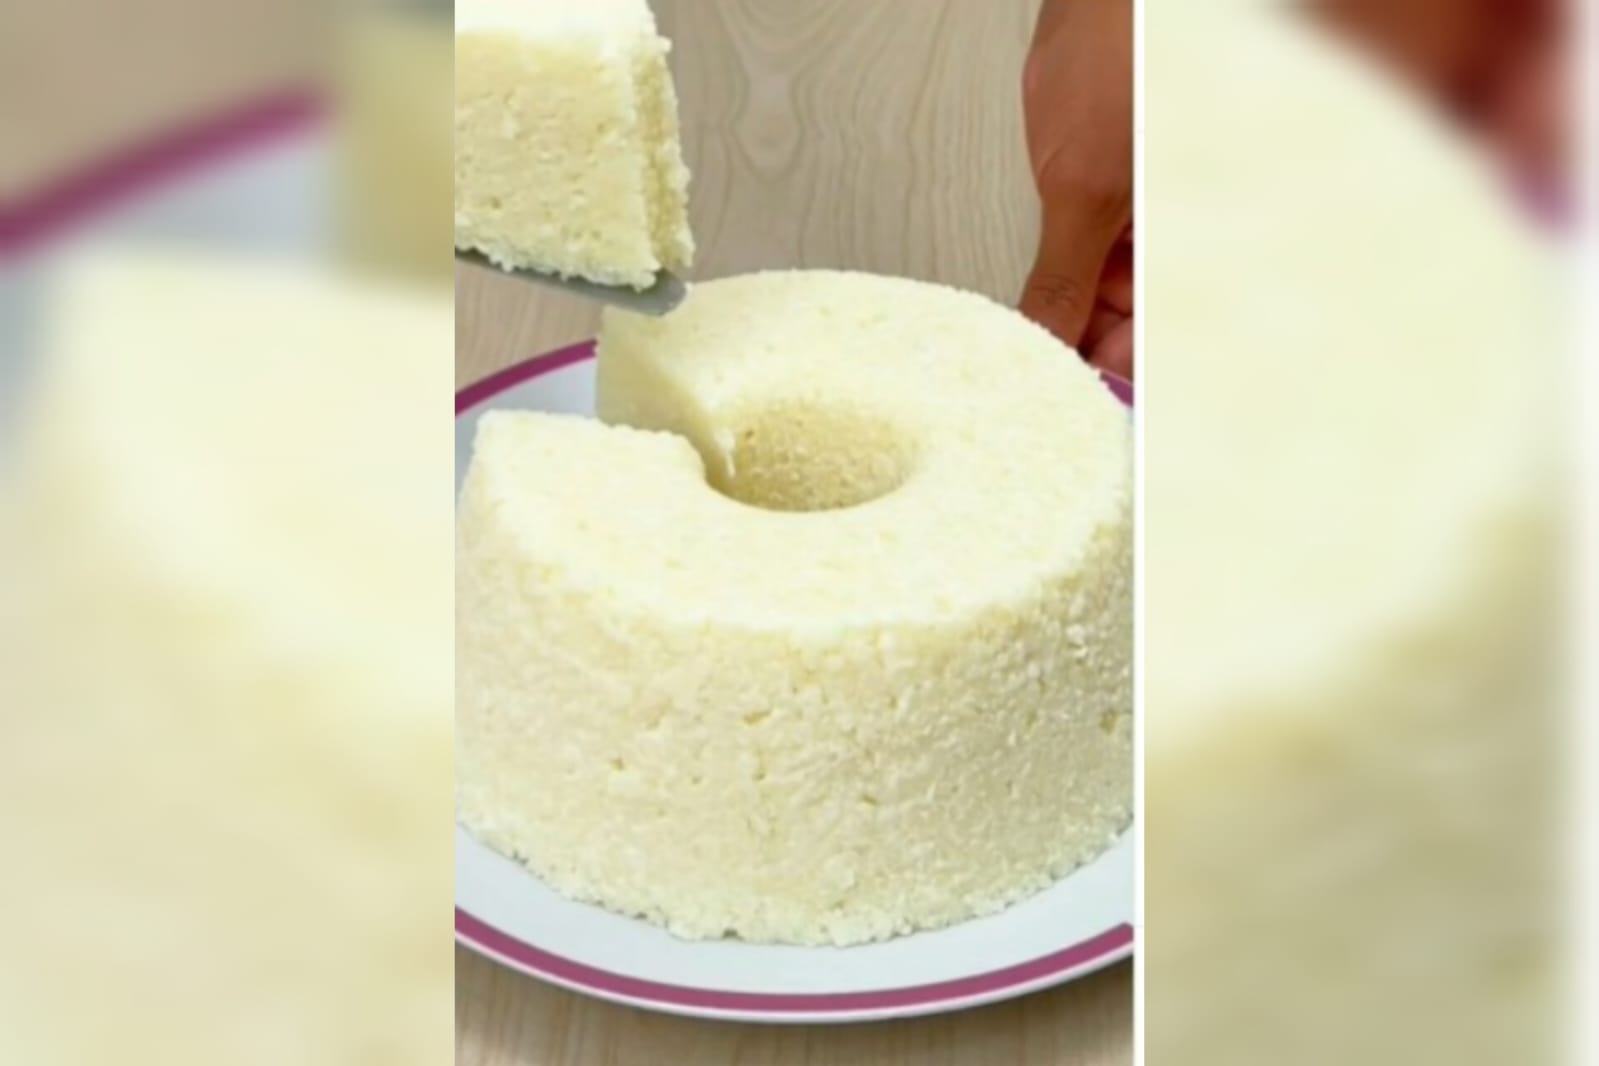 Aprenda a fazer o bolo que leva poucos ingredientes e fica pronto em 5 minutos